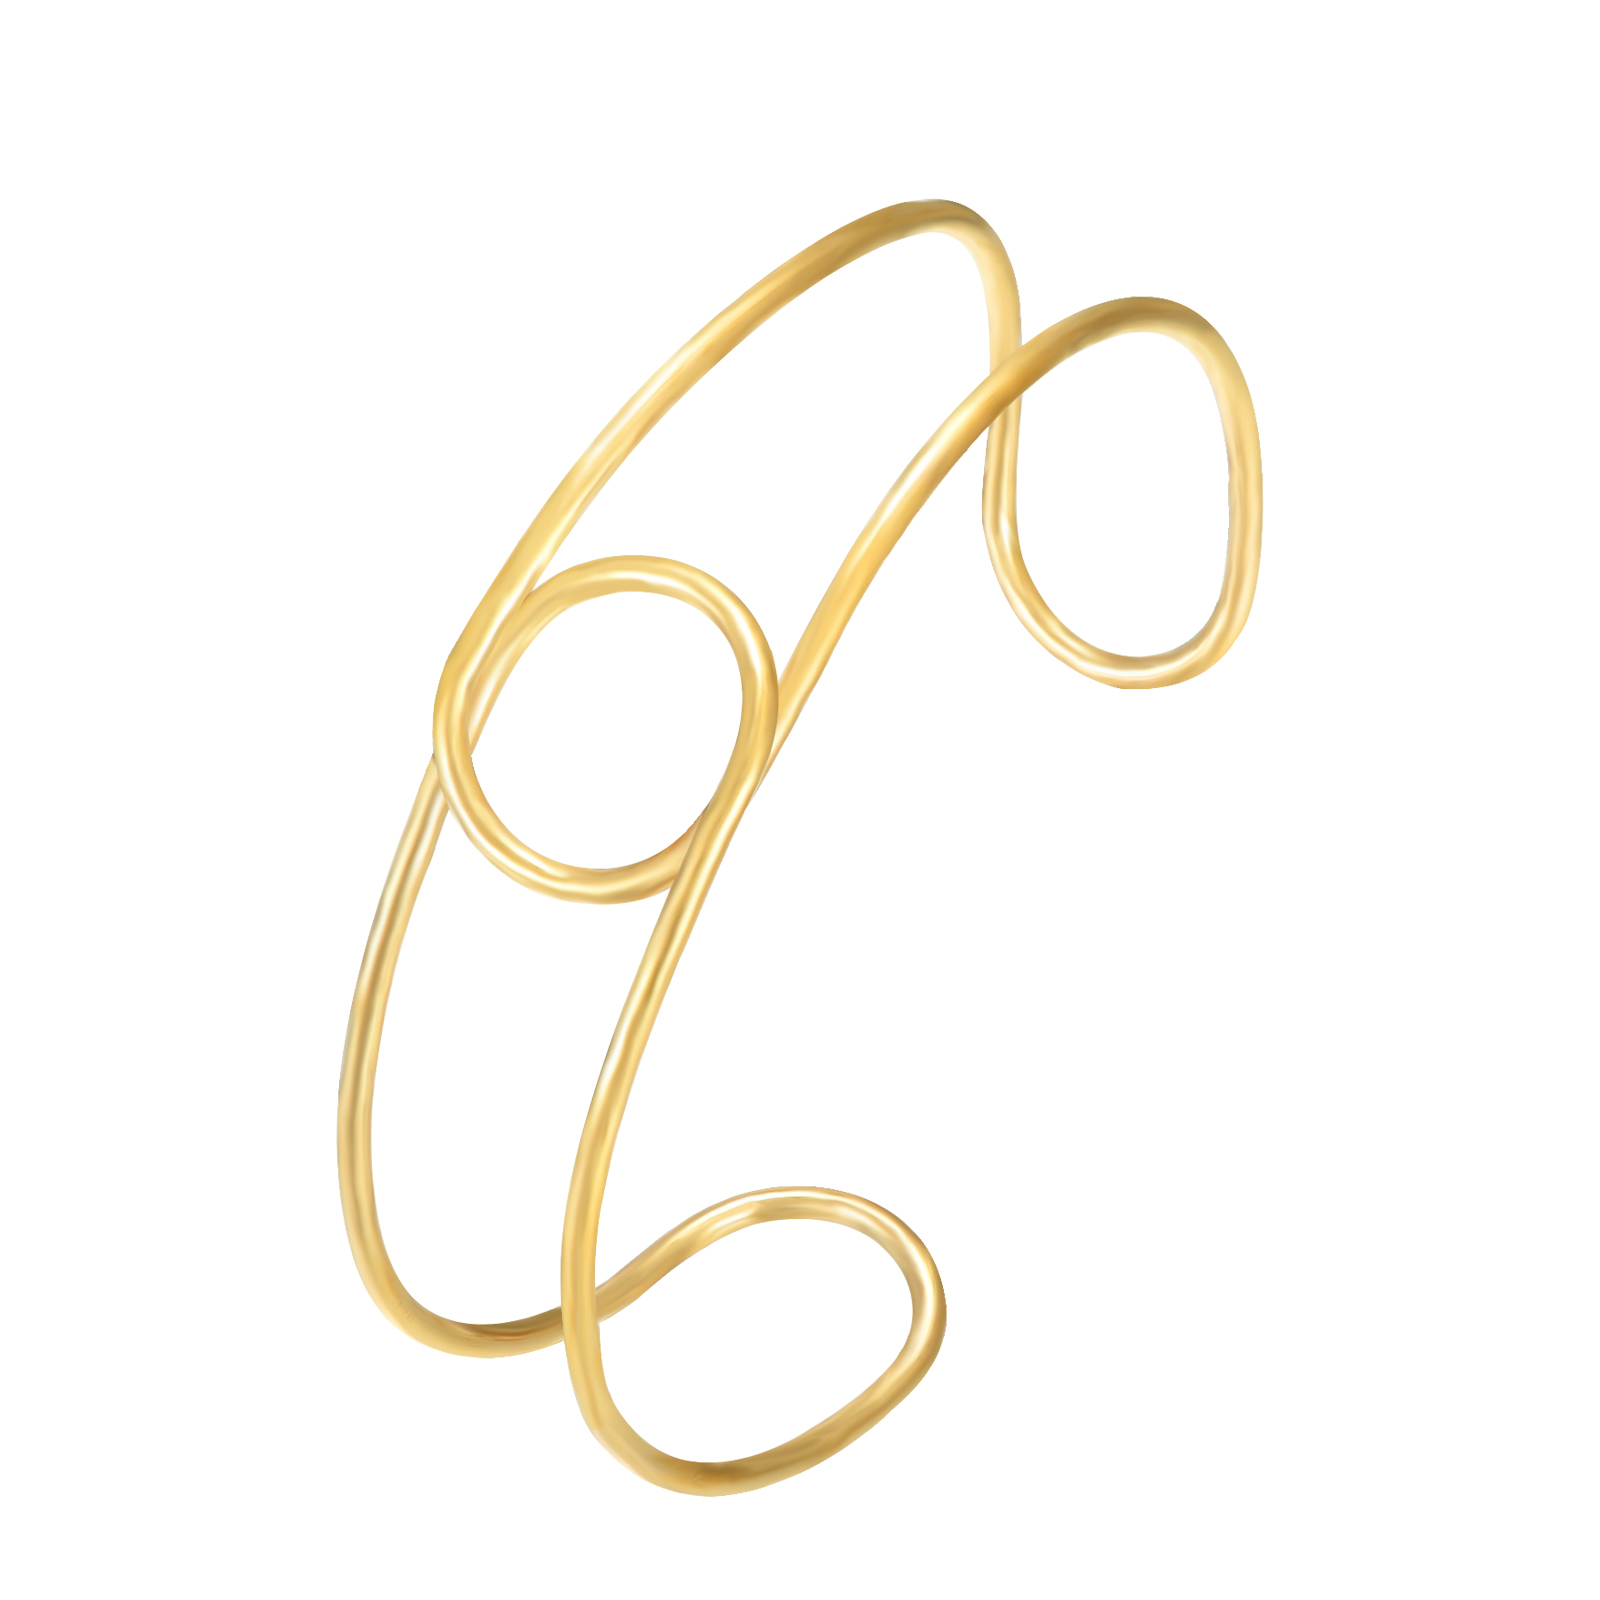 Steel Bracelets Knot Steel Bracelet - Escalava 68 mm - Gold Color